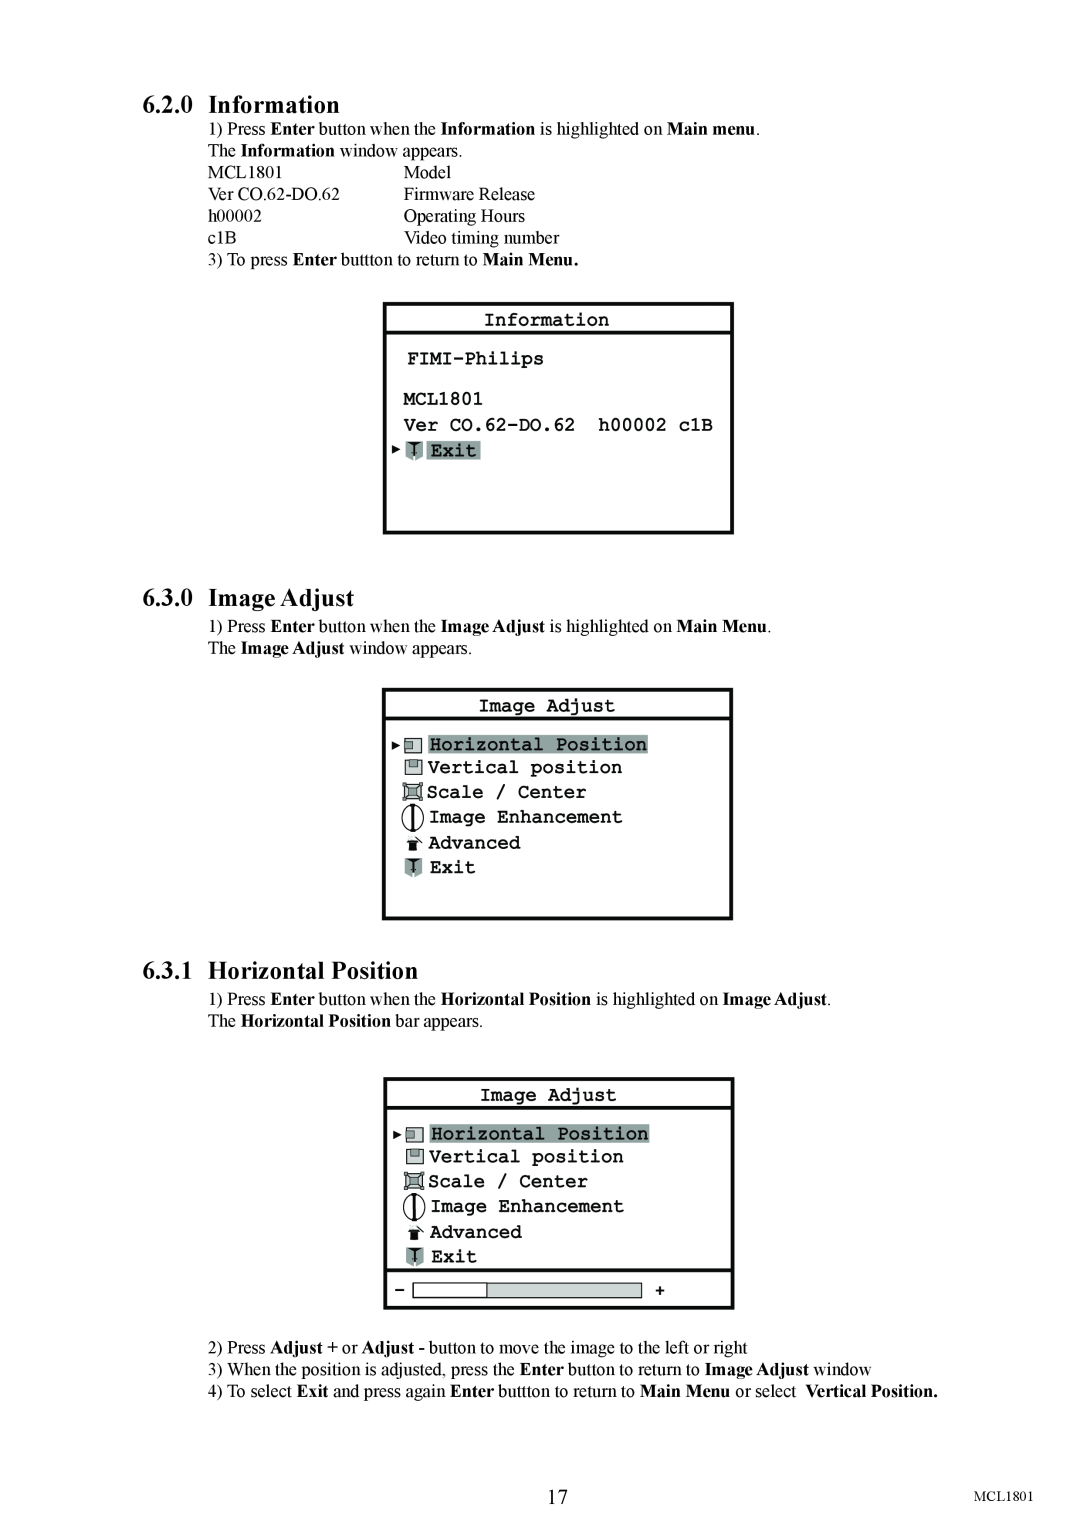 Philips user manual 6.2.0Information, 6.3.0Image Adjust, 6.3.1Horizontal Position, Information FIMI-Philips MCL1801 